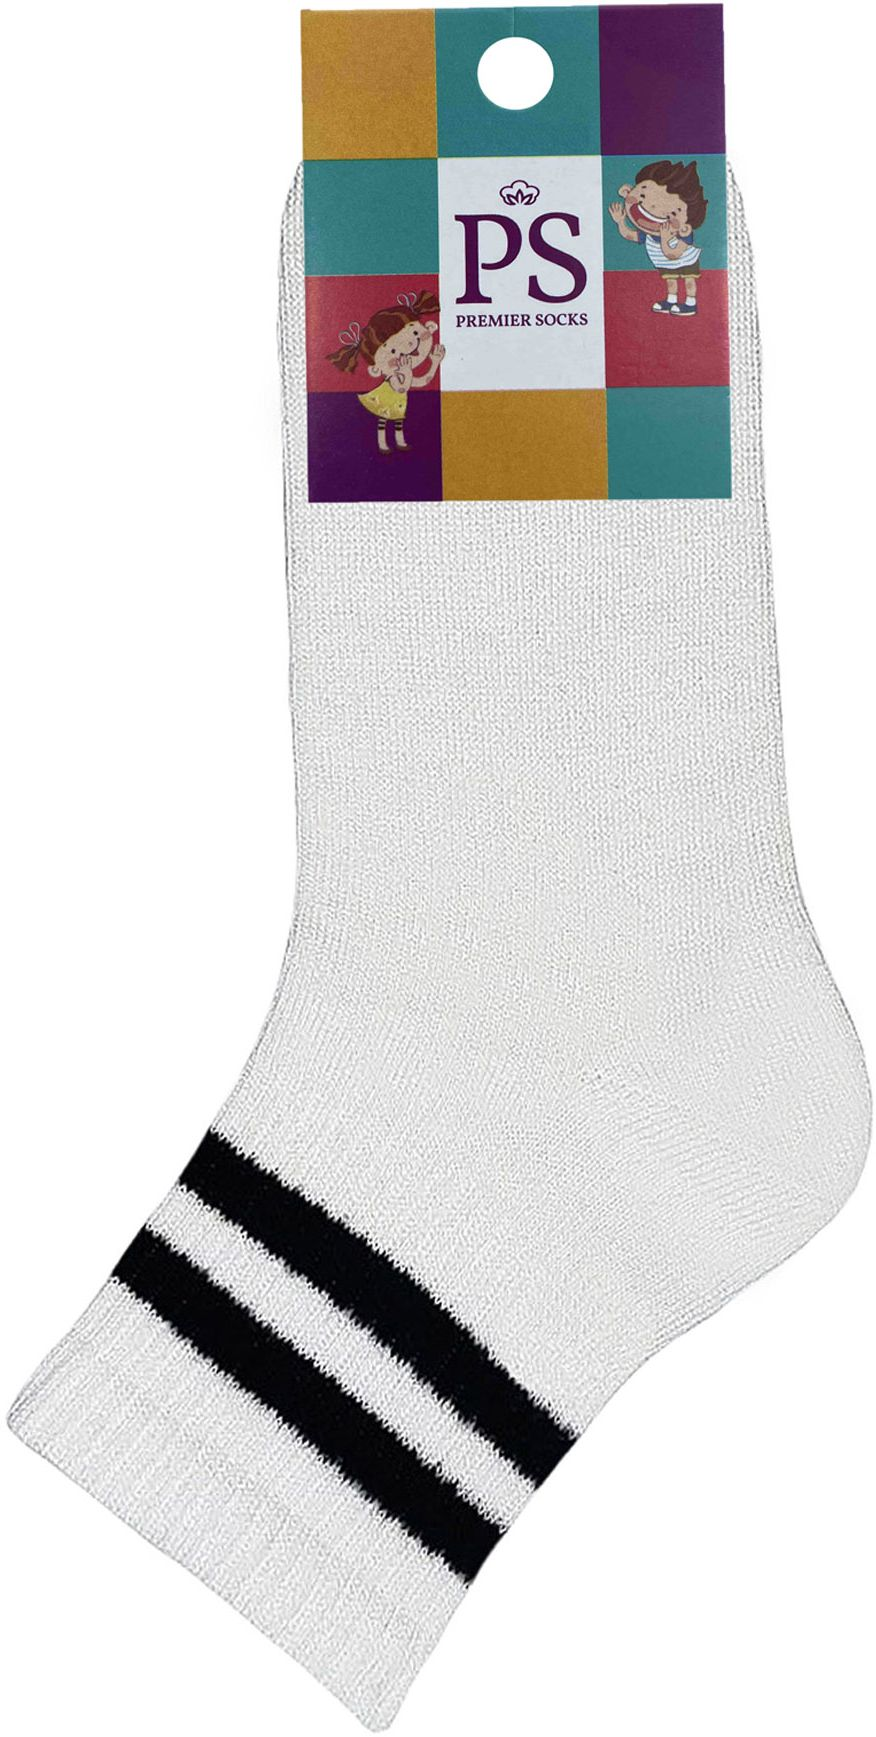 Носки детские Premier Socks 18-20 1 пара белые с черными полосками (4820163320076) фото 2